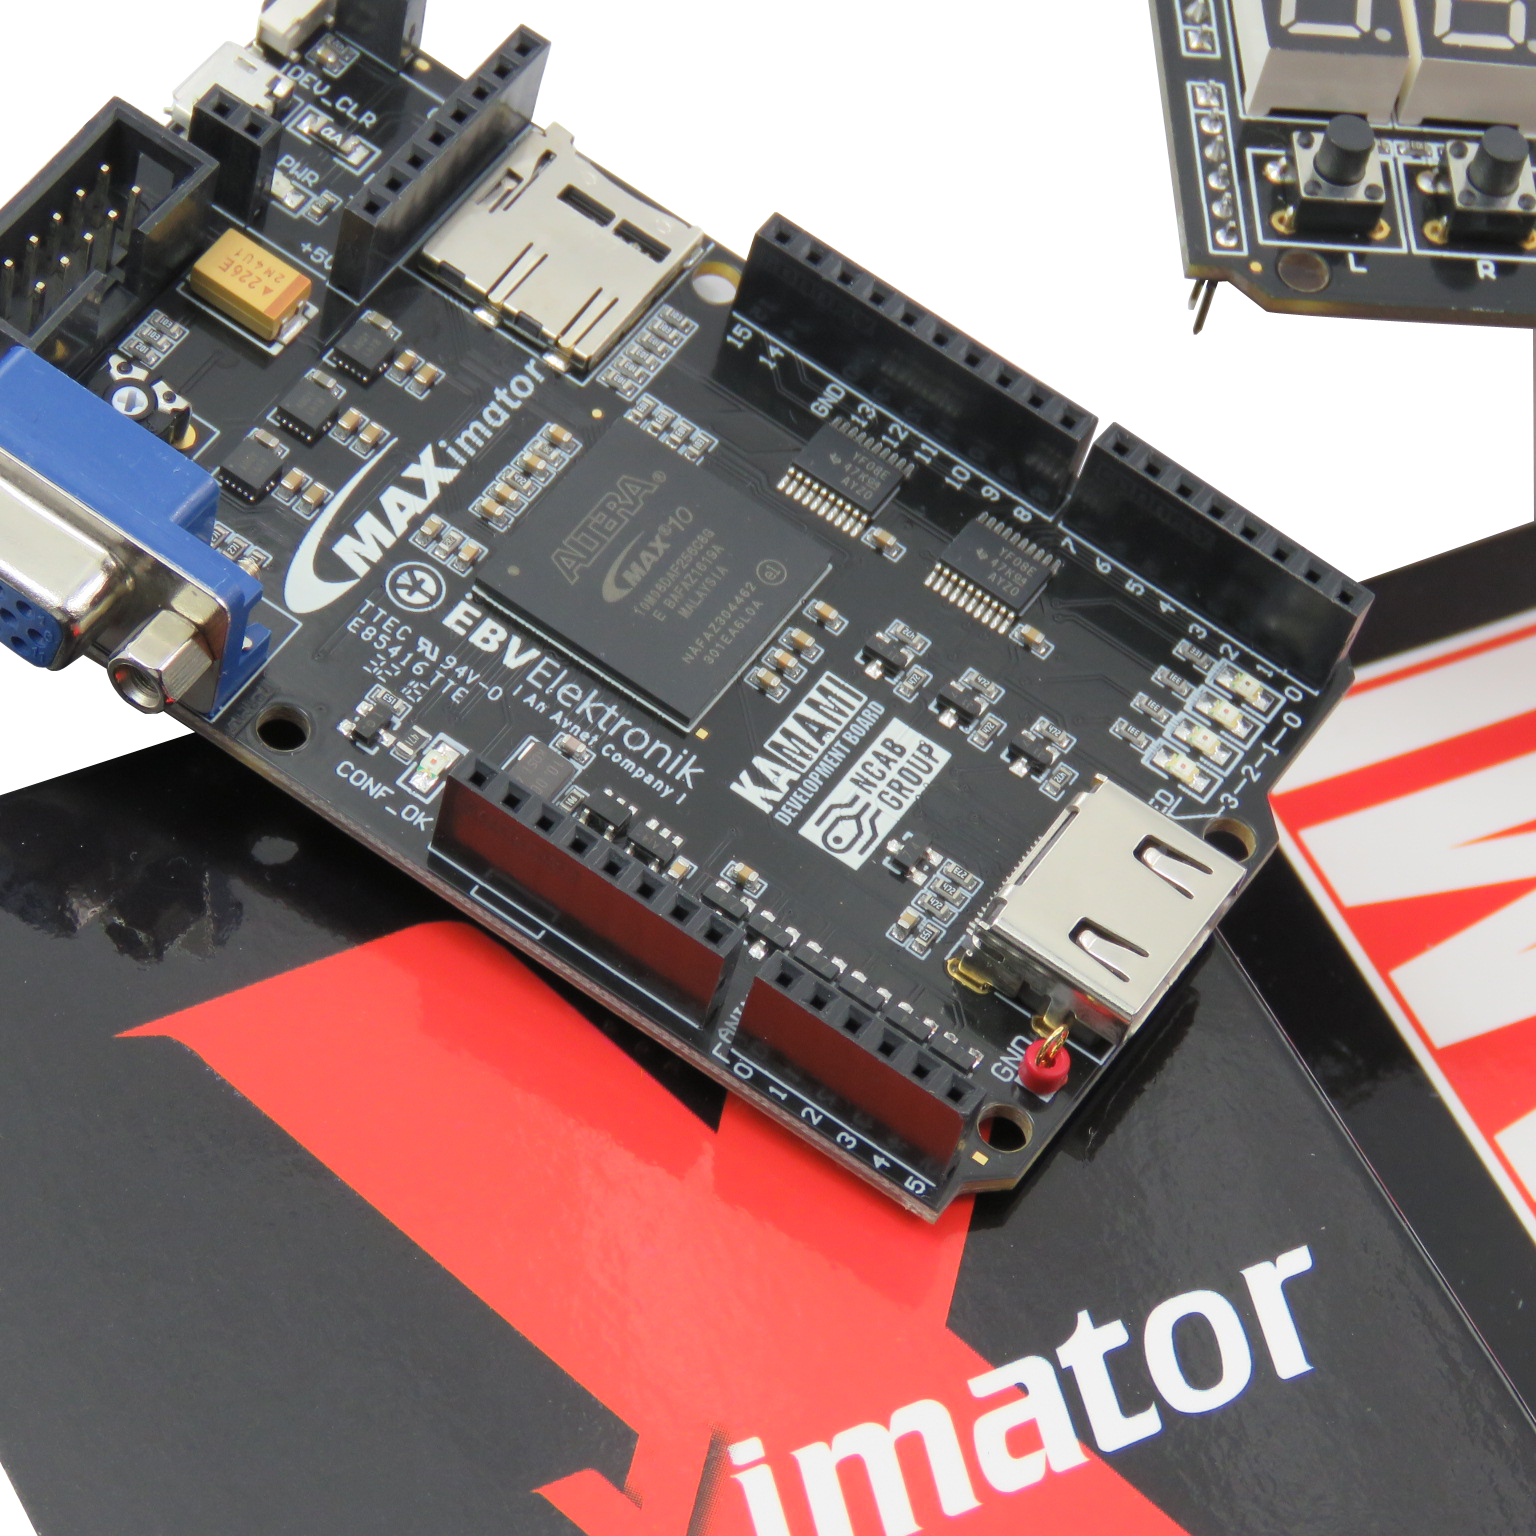 maXimator - Altera MAX10 FPGA development board